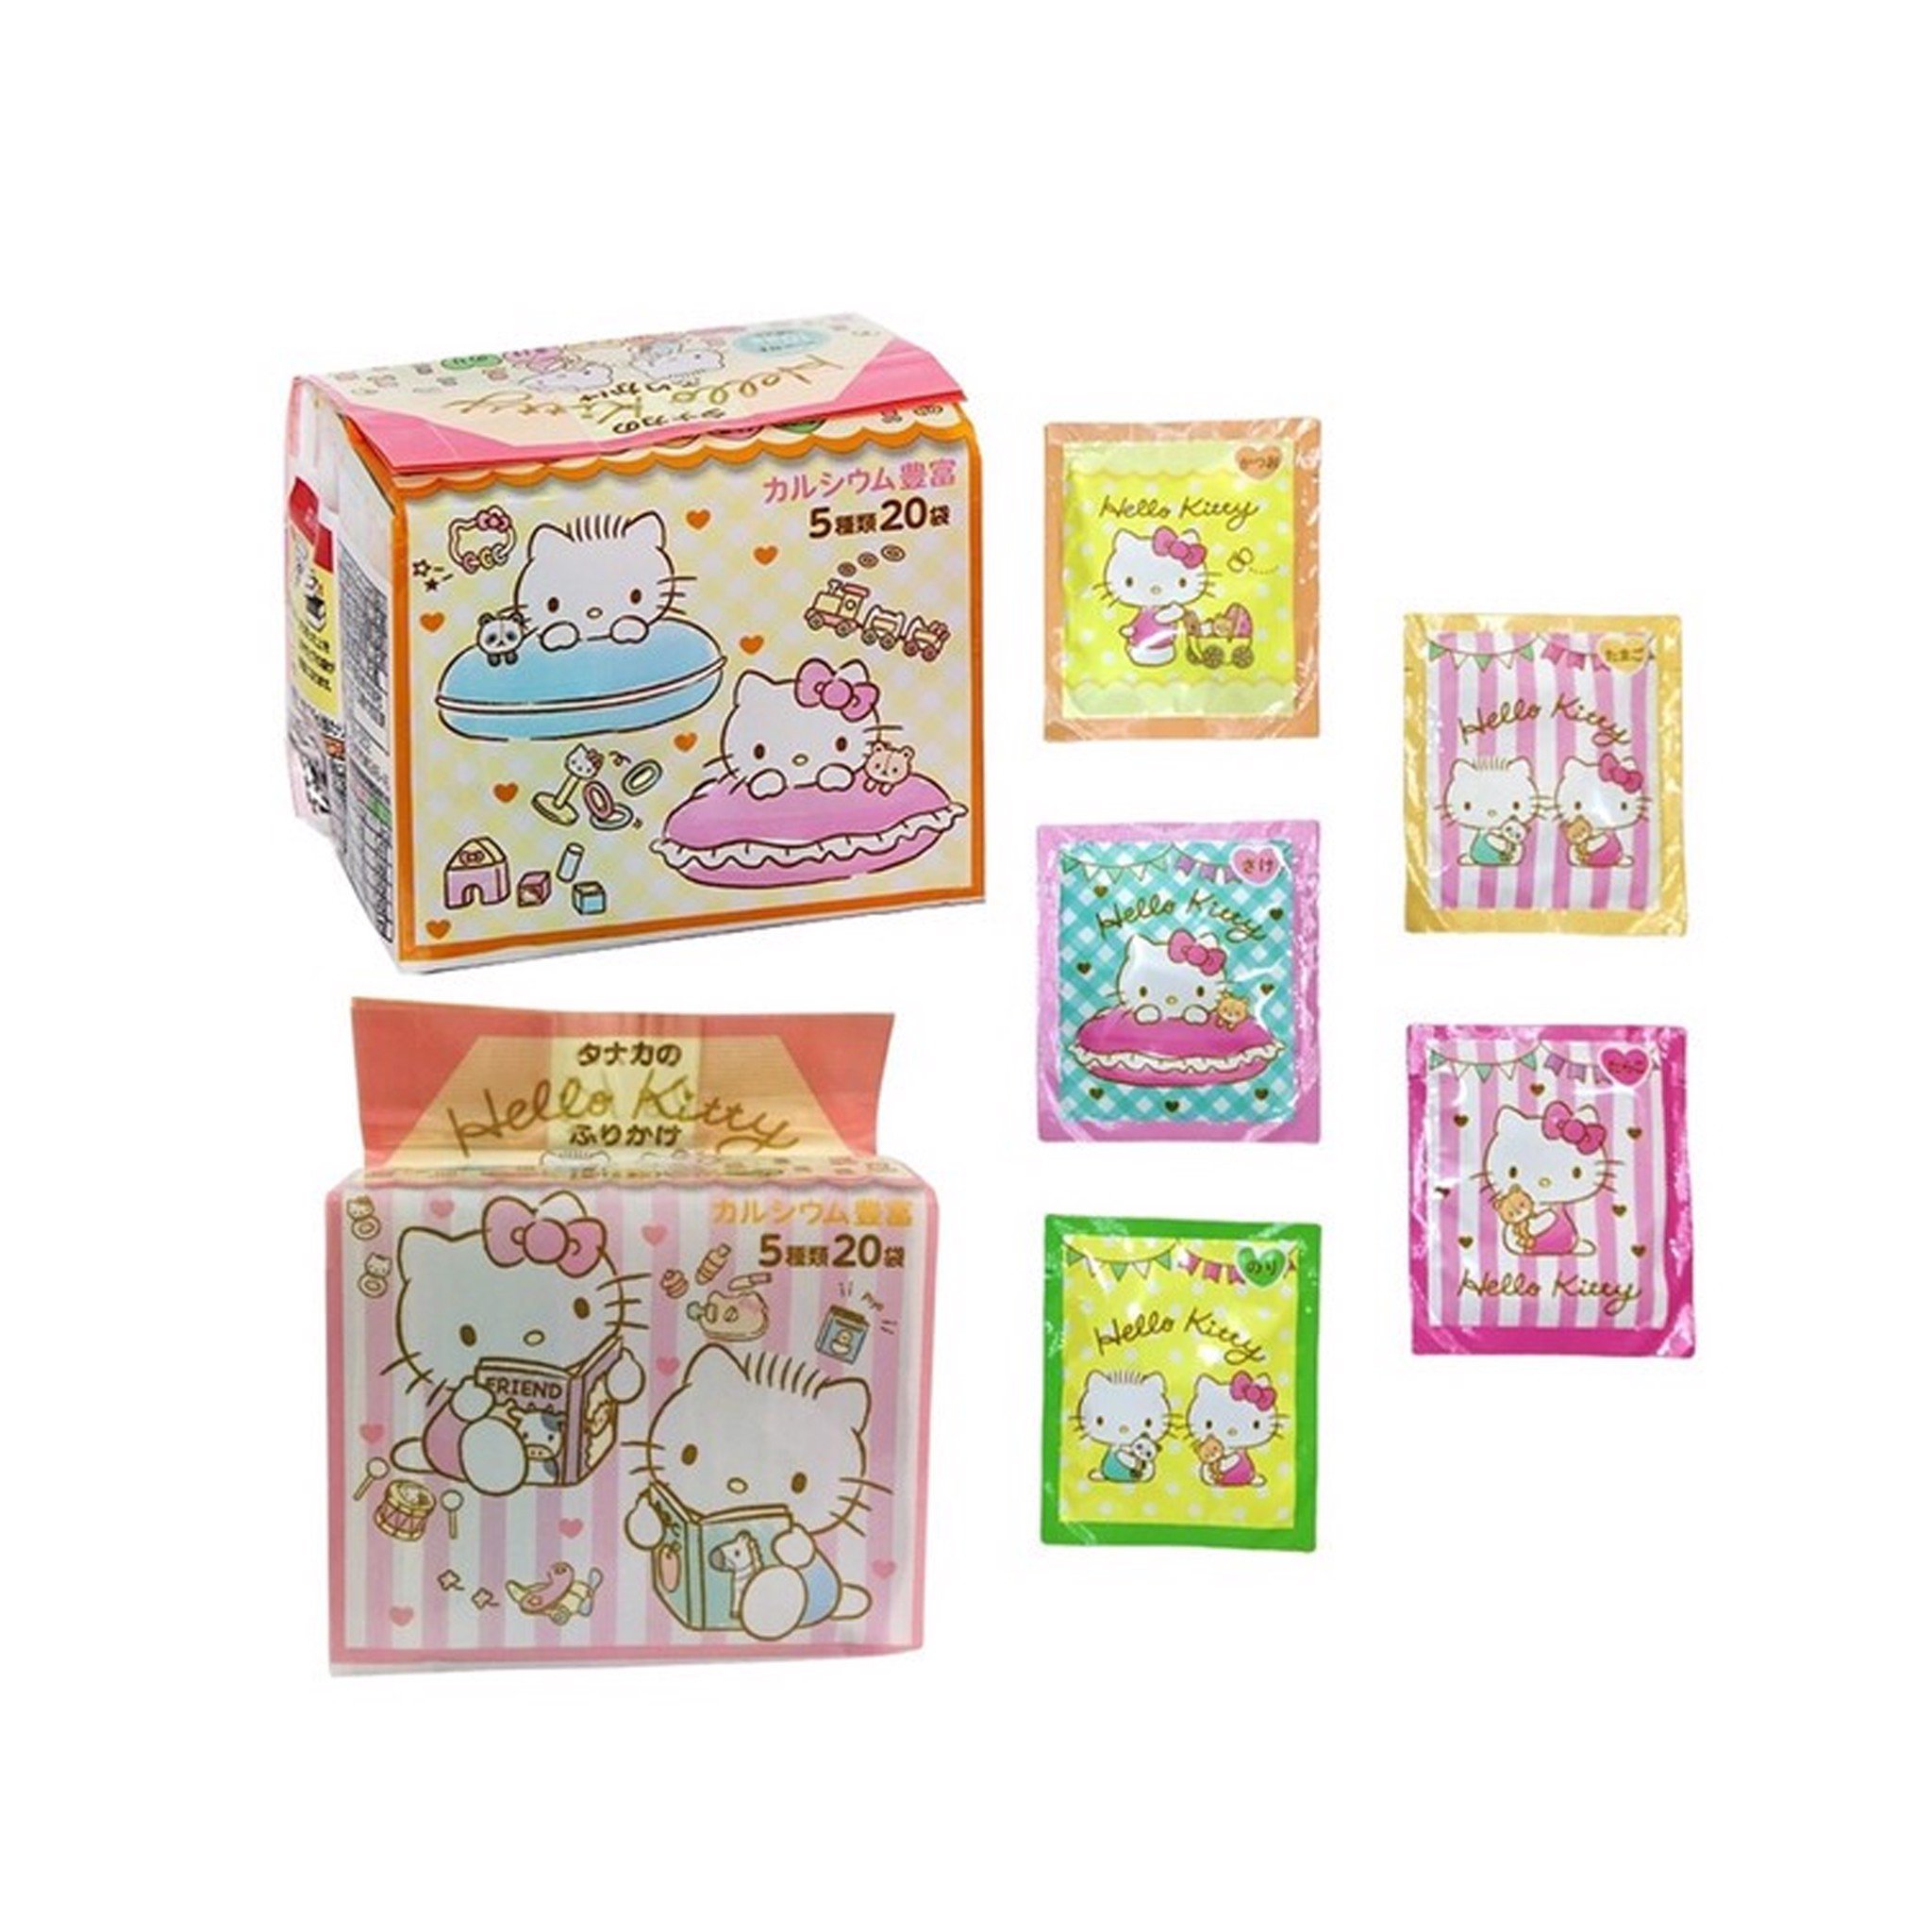 Gia vị rắc cơm Hello Kitty 20 gói - Hàng Nhật nội địa